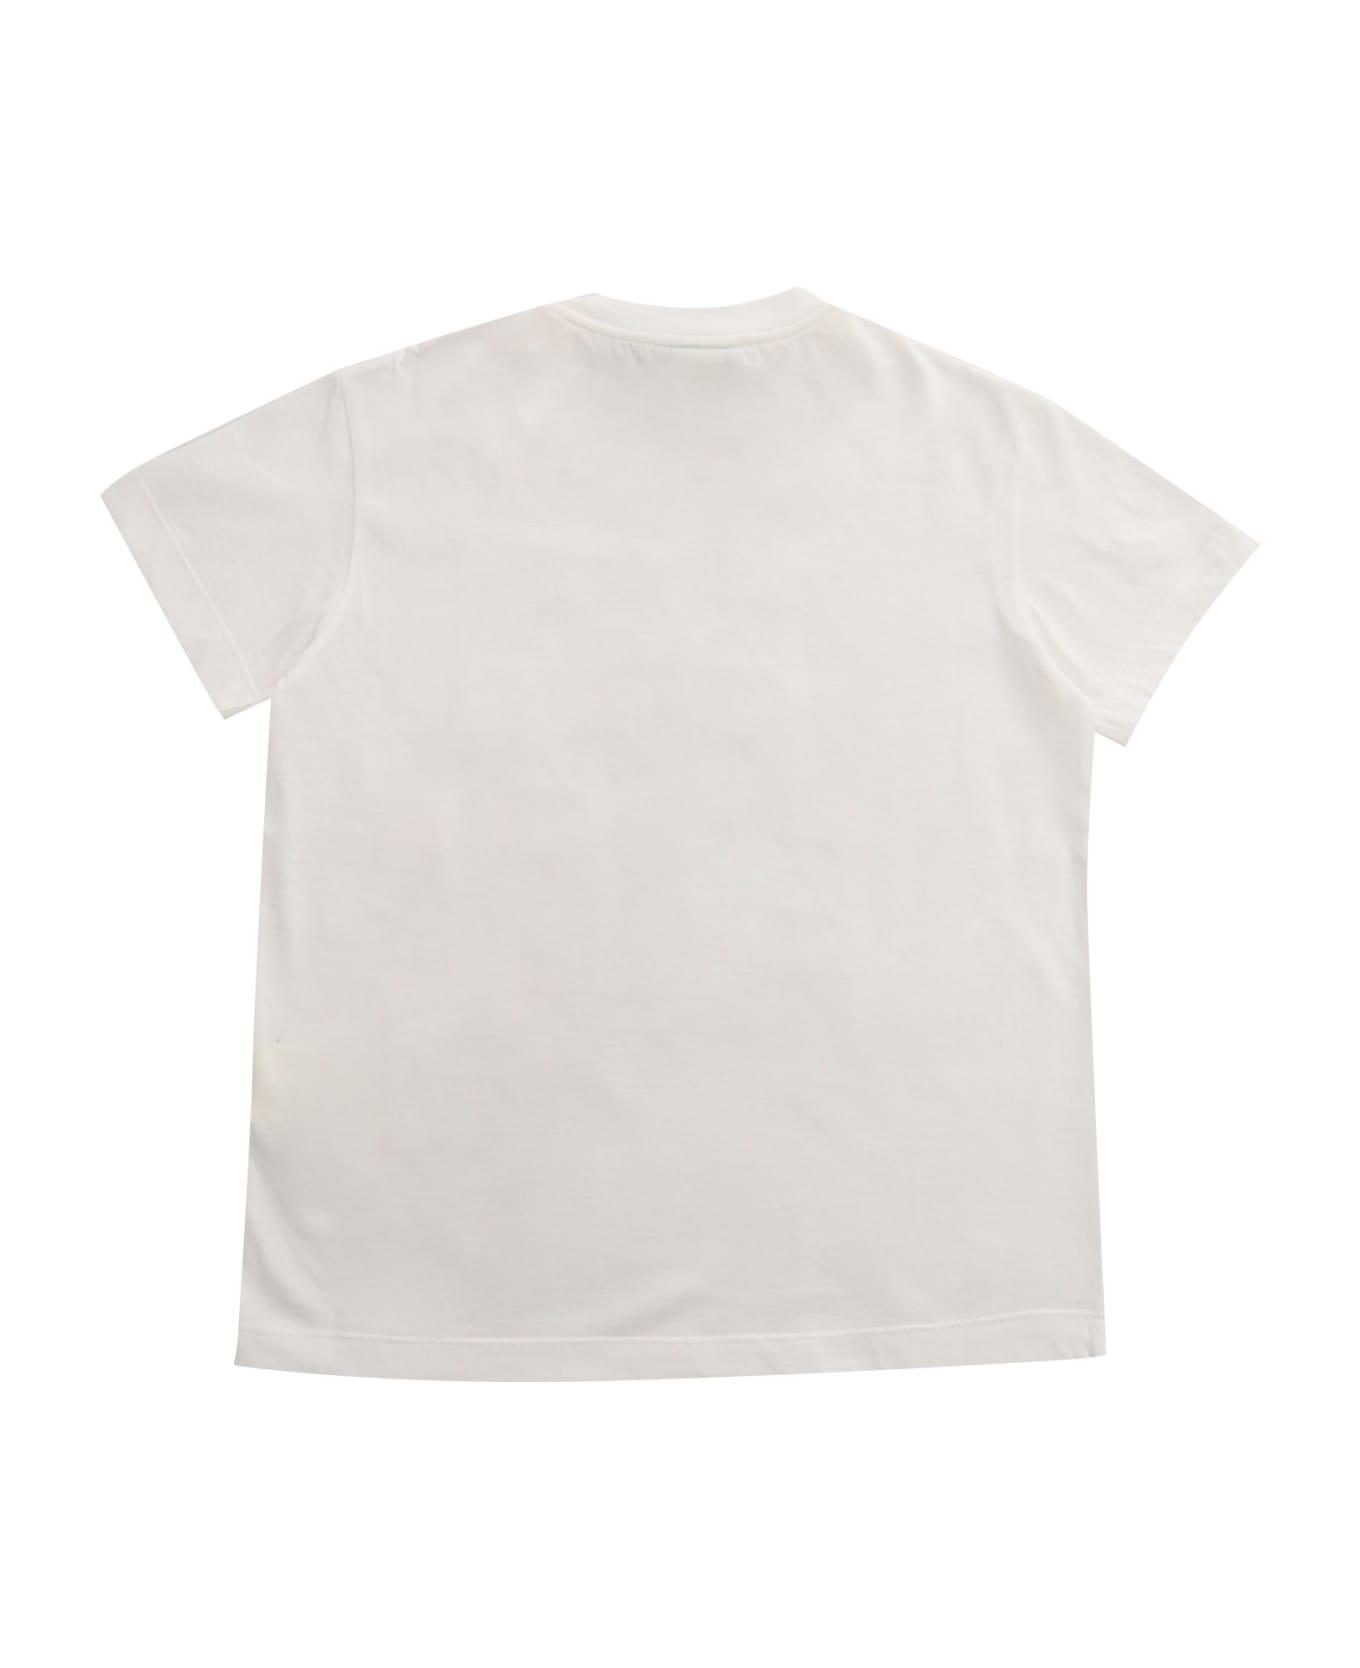 Fendi White Fendi T-shirt - WHITE